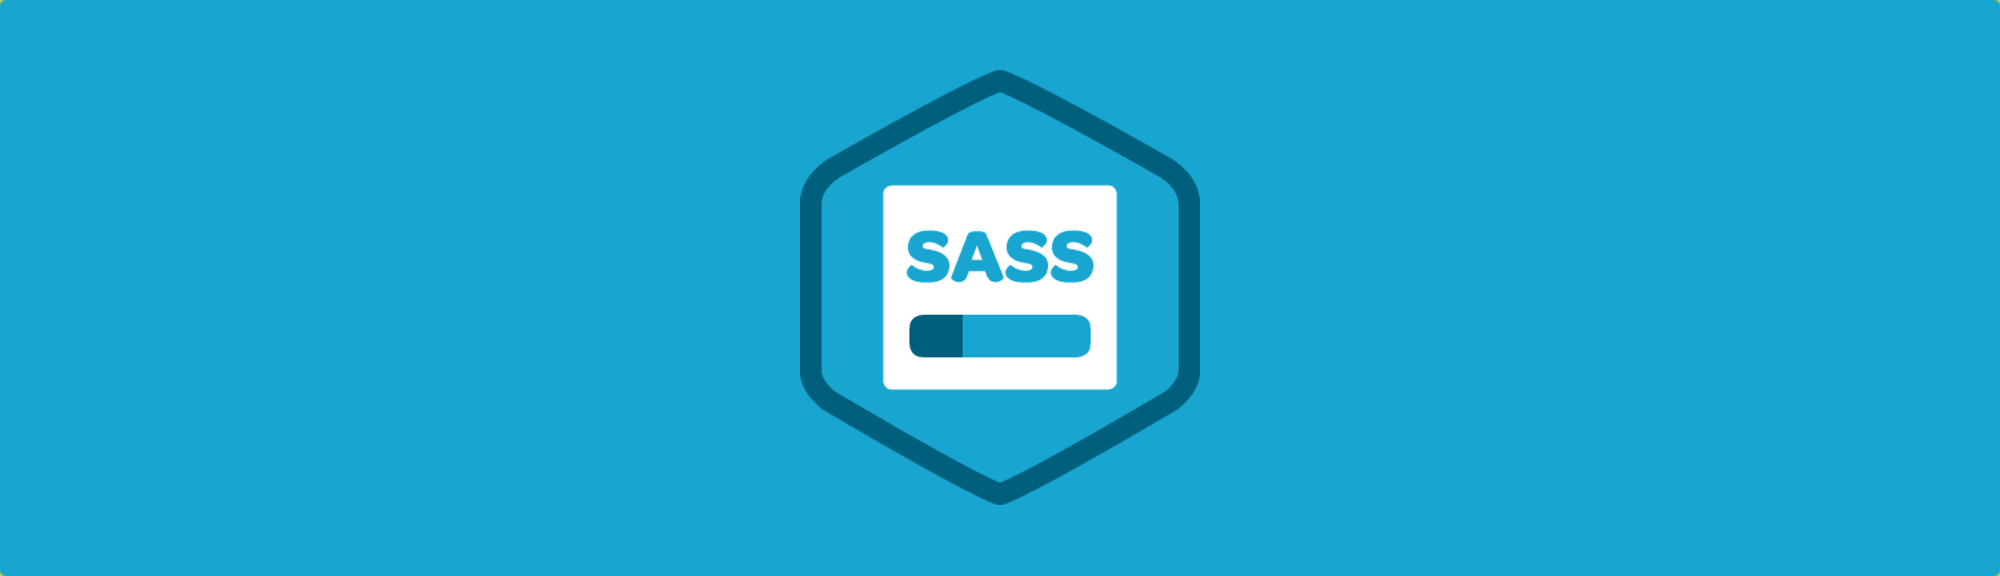 استفاده از Sass برای  ساده کردن کدهای css  در طراحی صفحات وب